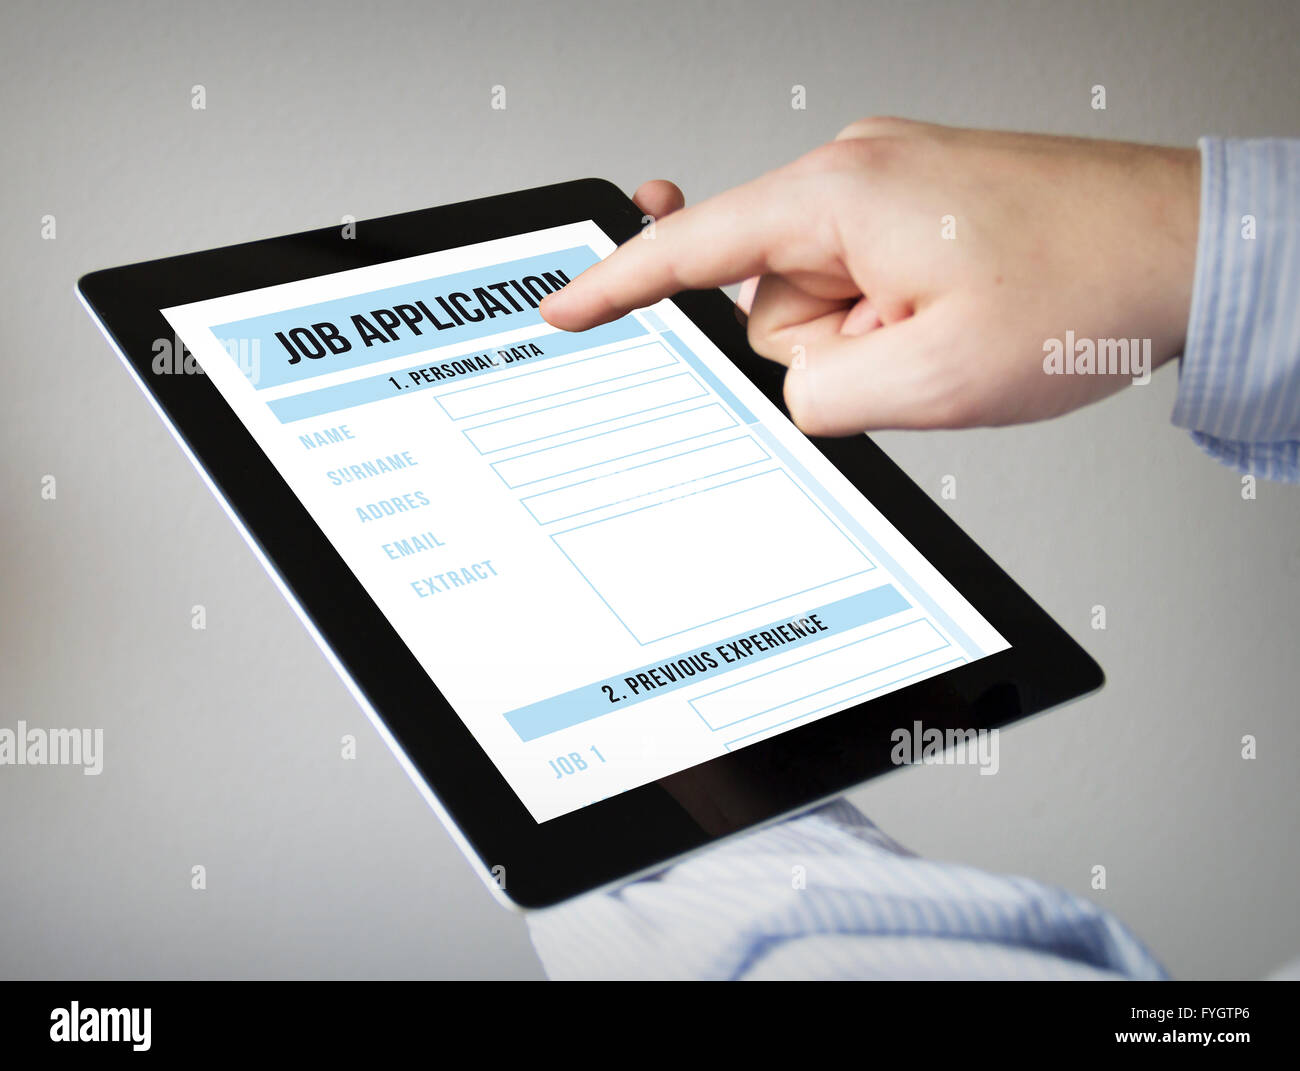 Nouvelles technologies concept : les mains à l'écran tactile Tablet avec formulaire de demande d'emploi Banque D'Images